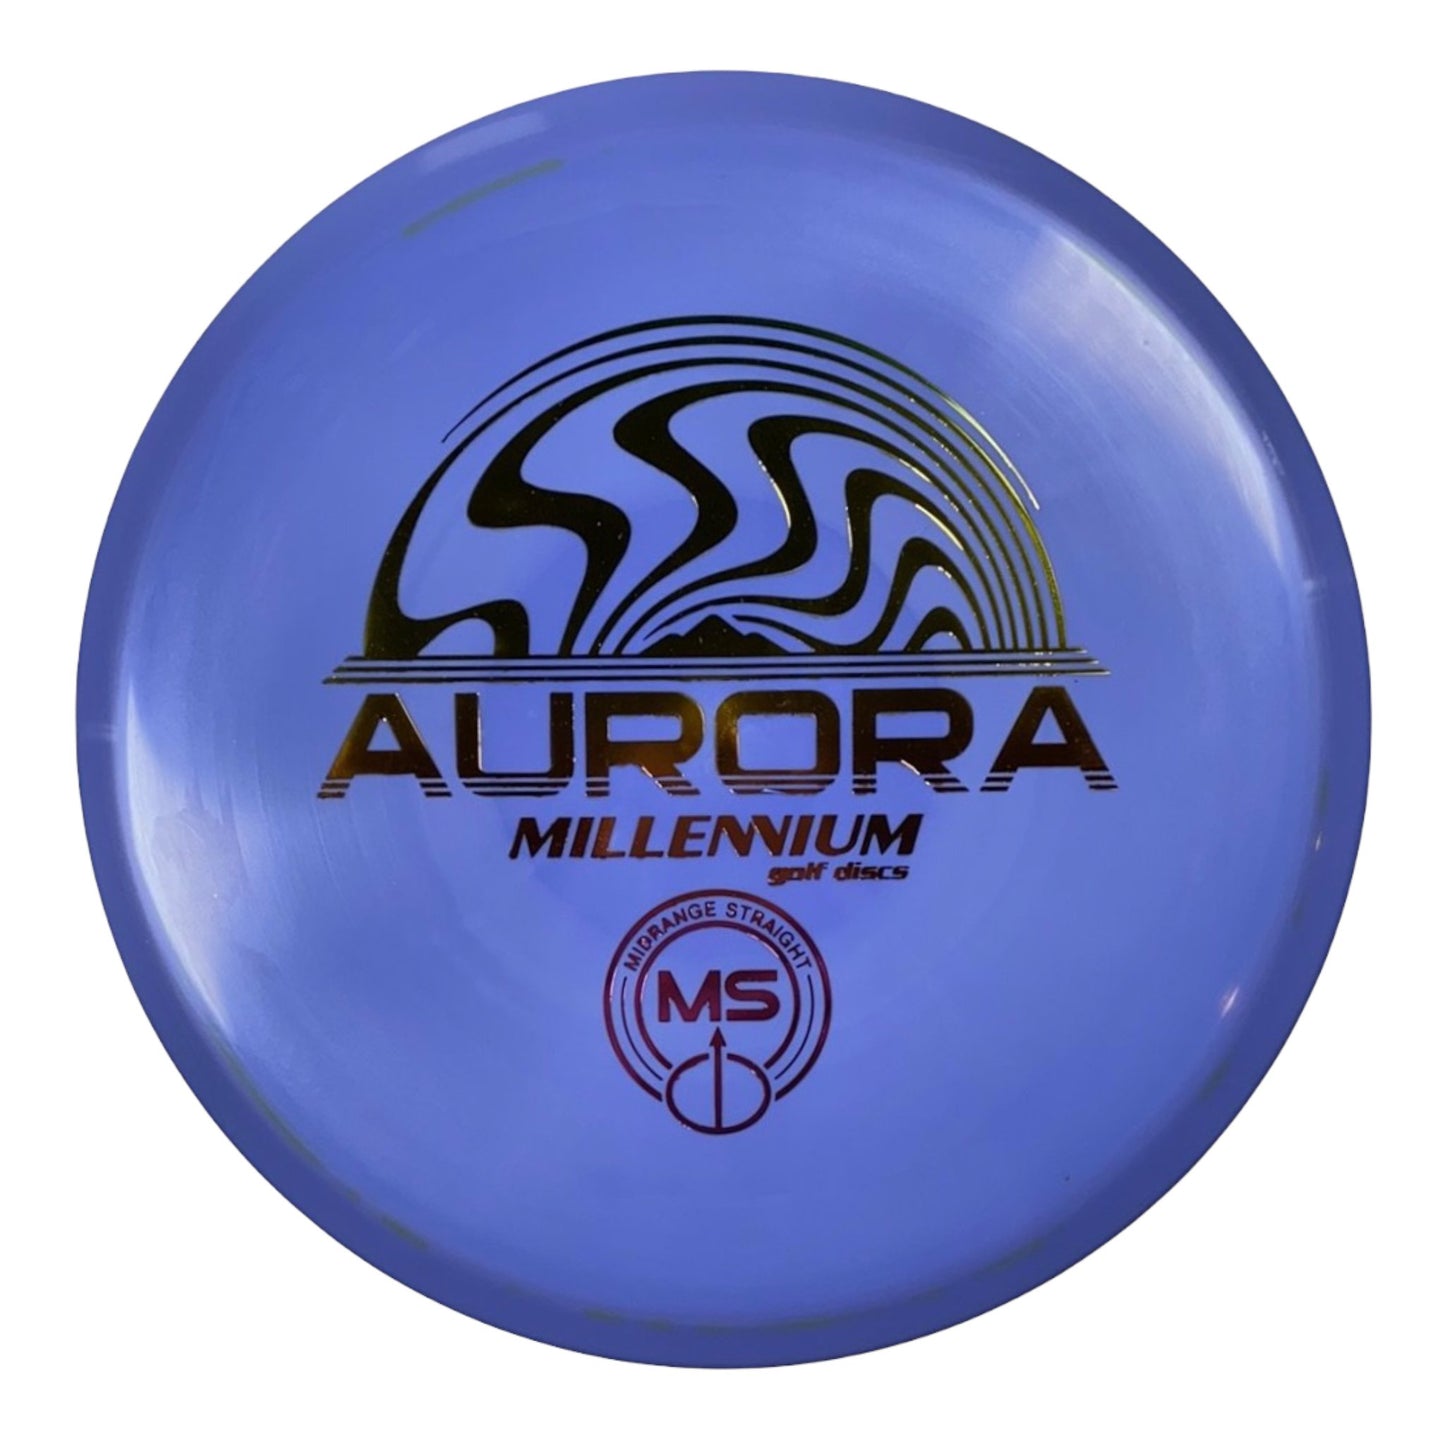 Millennium Golf Discs Aurora MS | Standard | Purple/Rainbow 171g Disc Golf